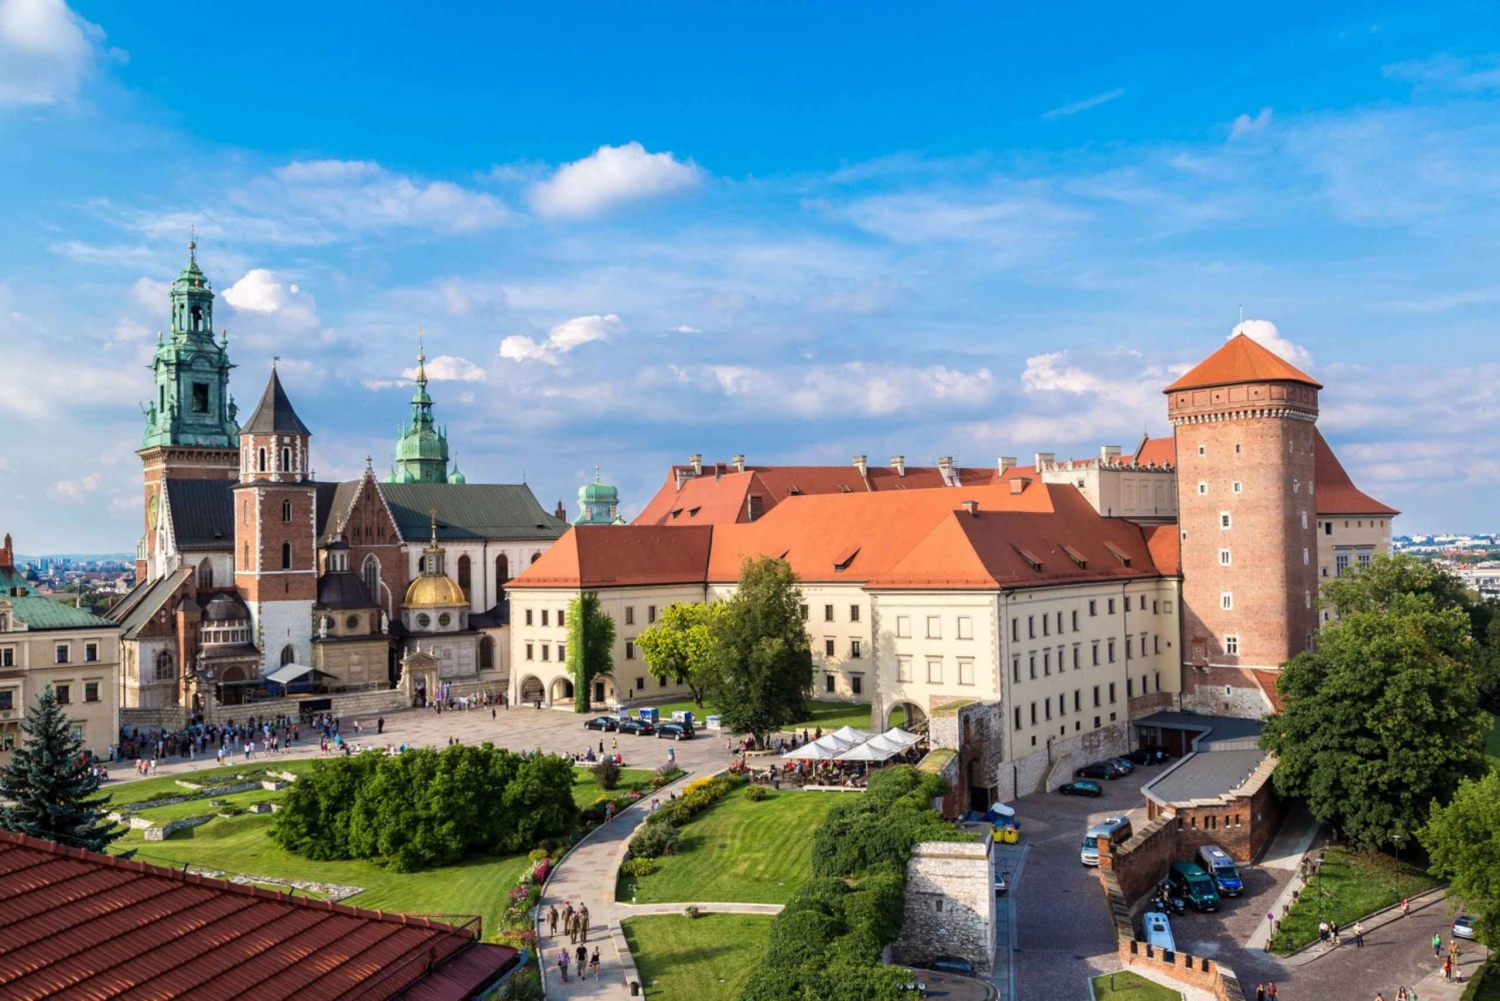 2-Day Krakow Tour: Wawel Hill, Jewish Heritage and Wieliczka